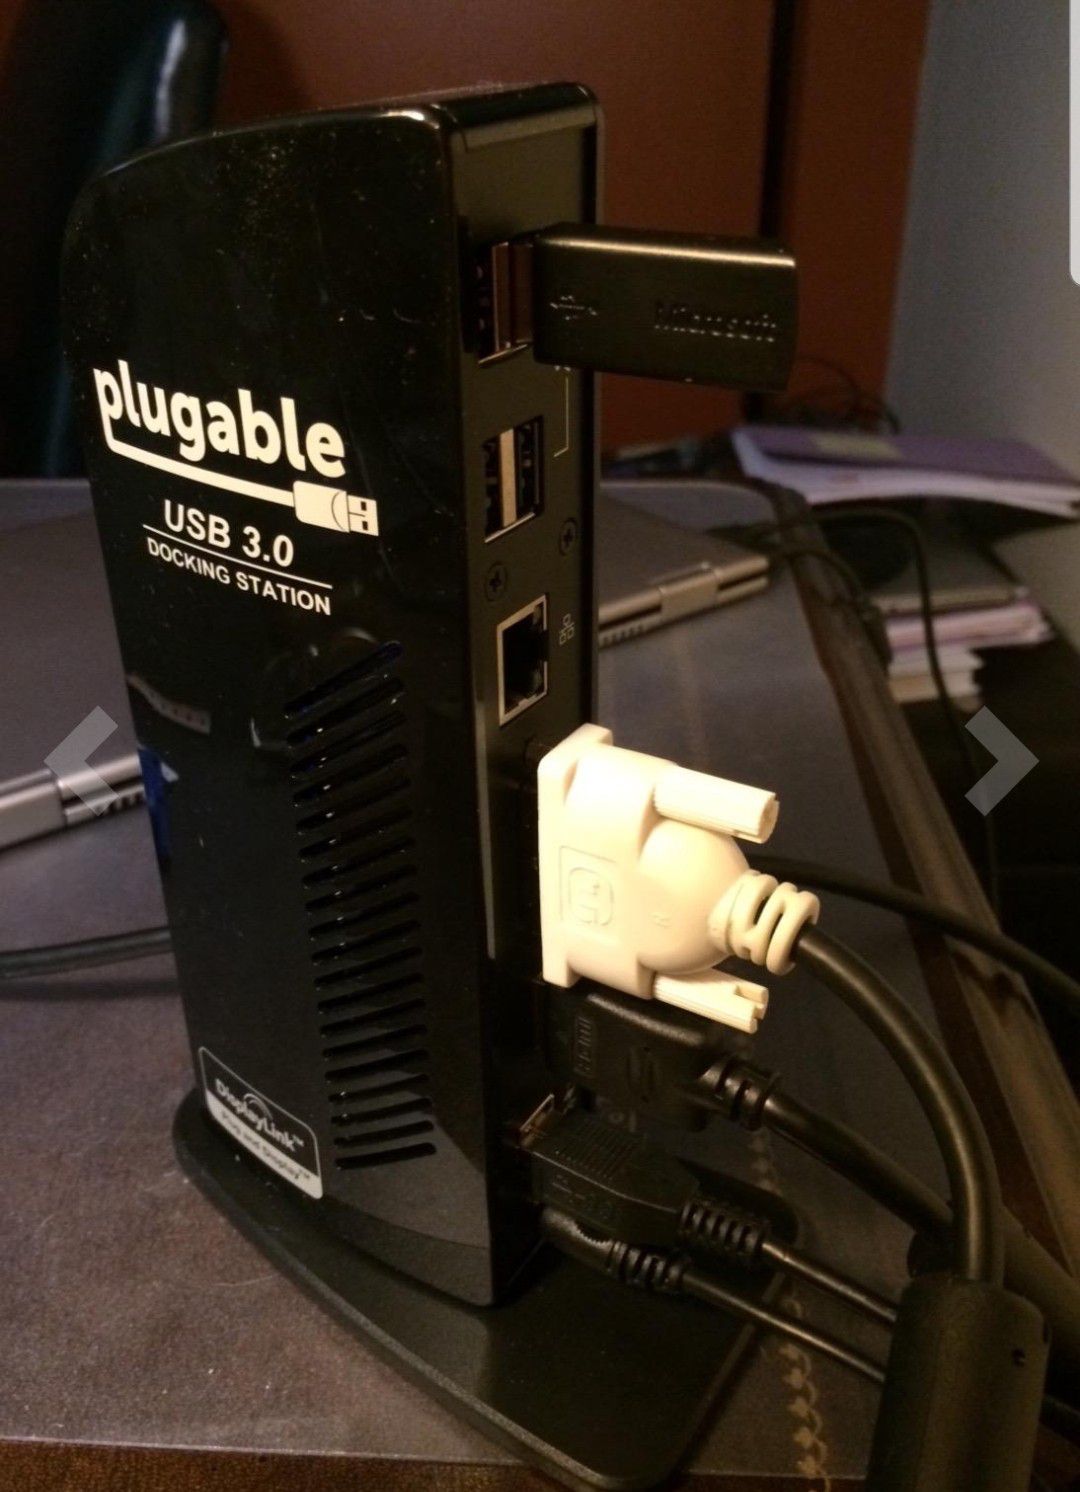 Plugable USB 3.0 Docking Station